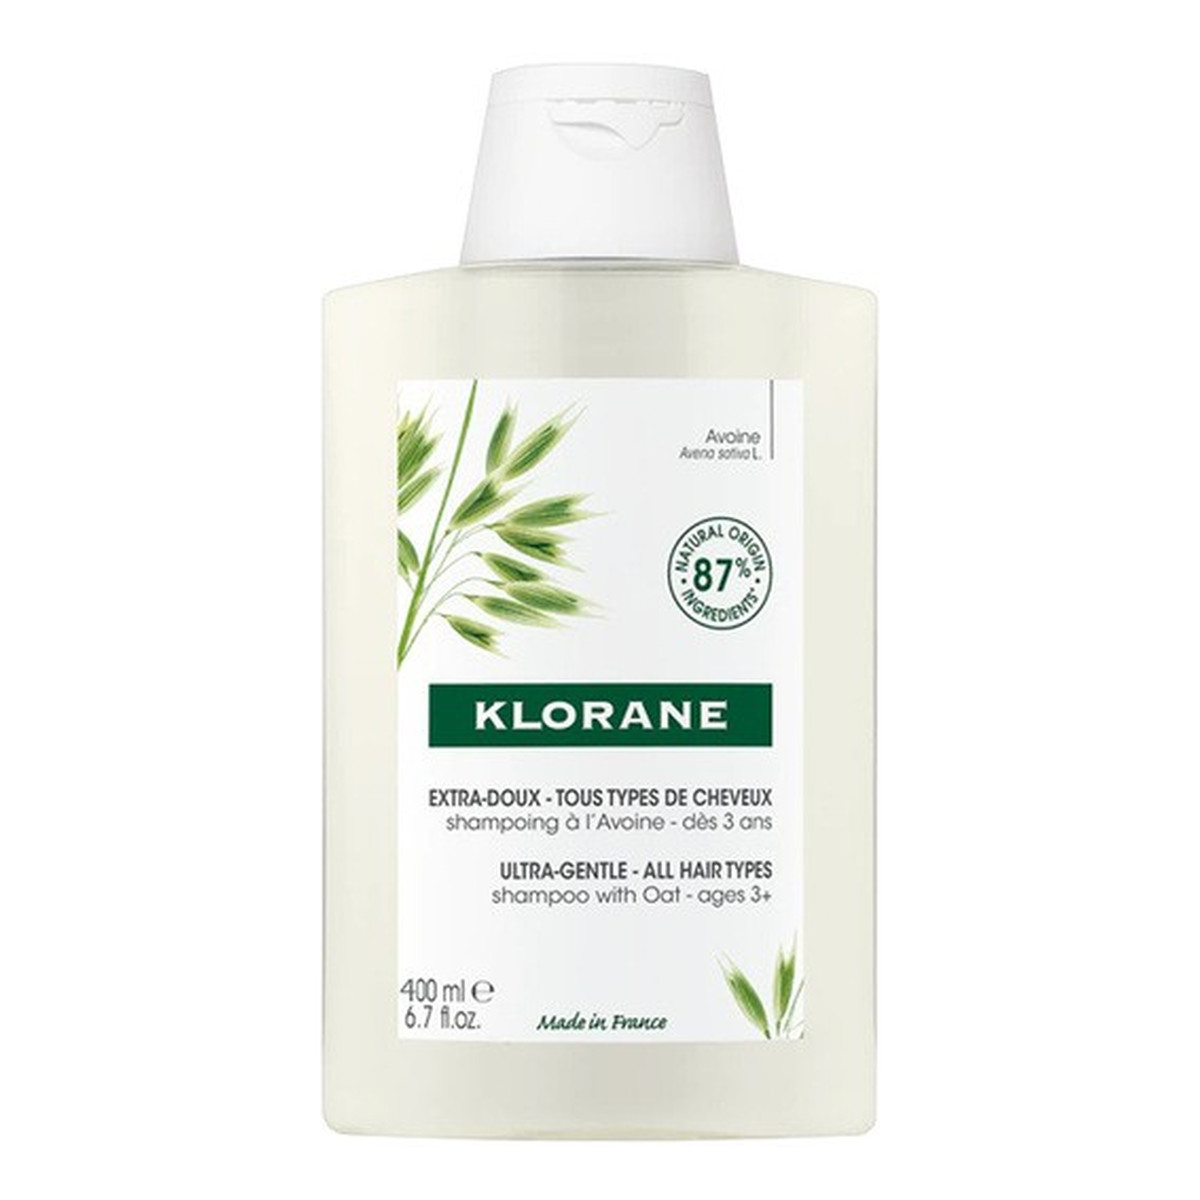 Klorane Ultra gentle shampoo delikatny szampon do włosów z mleczkiem owsianym 400ml